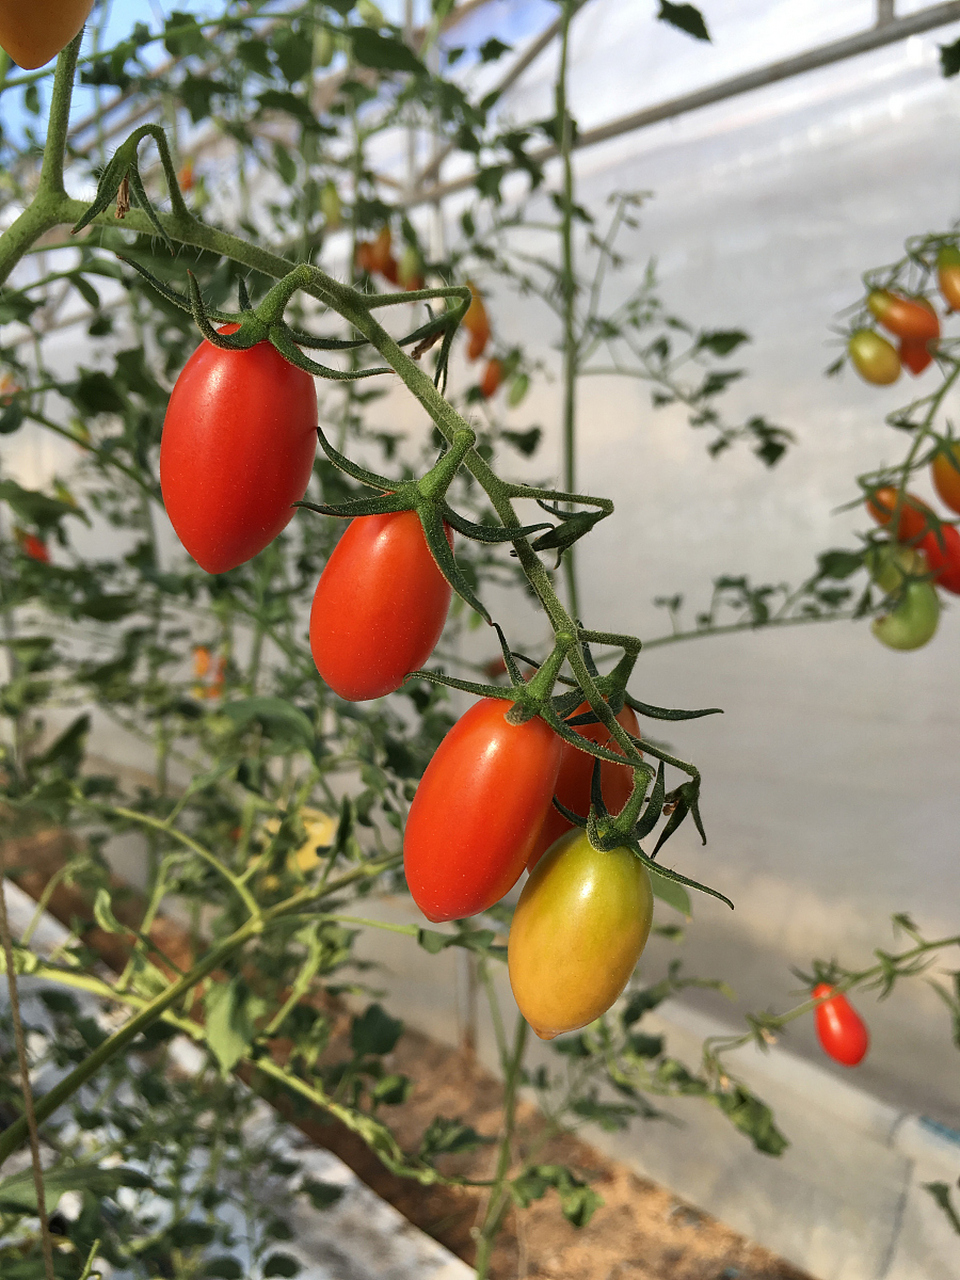 春季种植矮生小番茄秘诀大公开!抗病强品种,土壤肥沃排水好